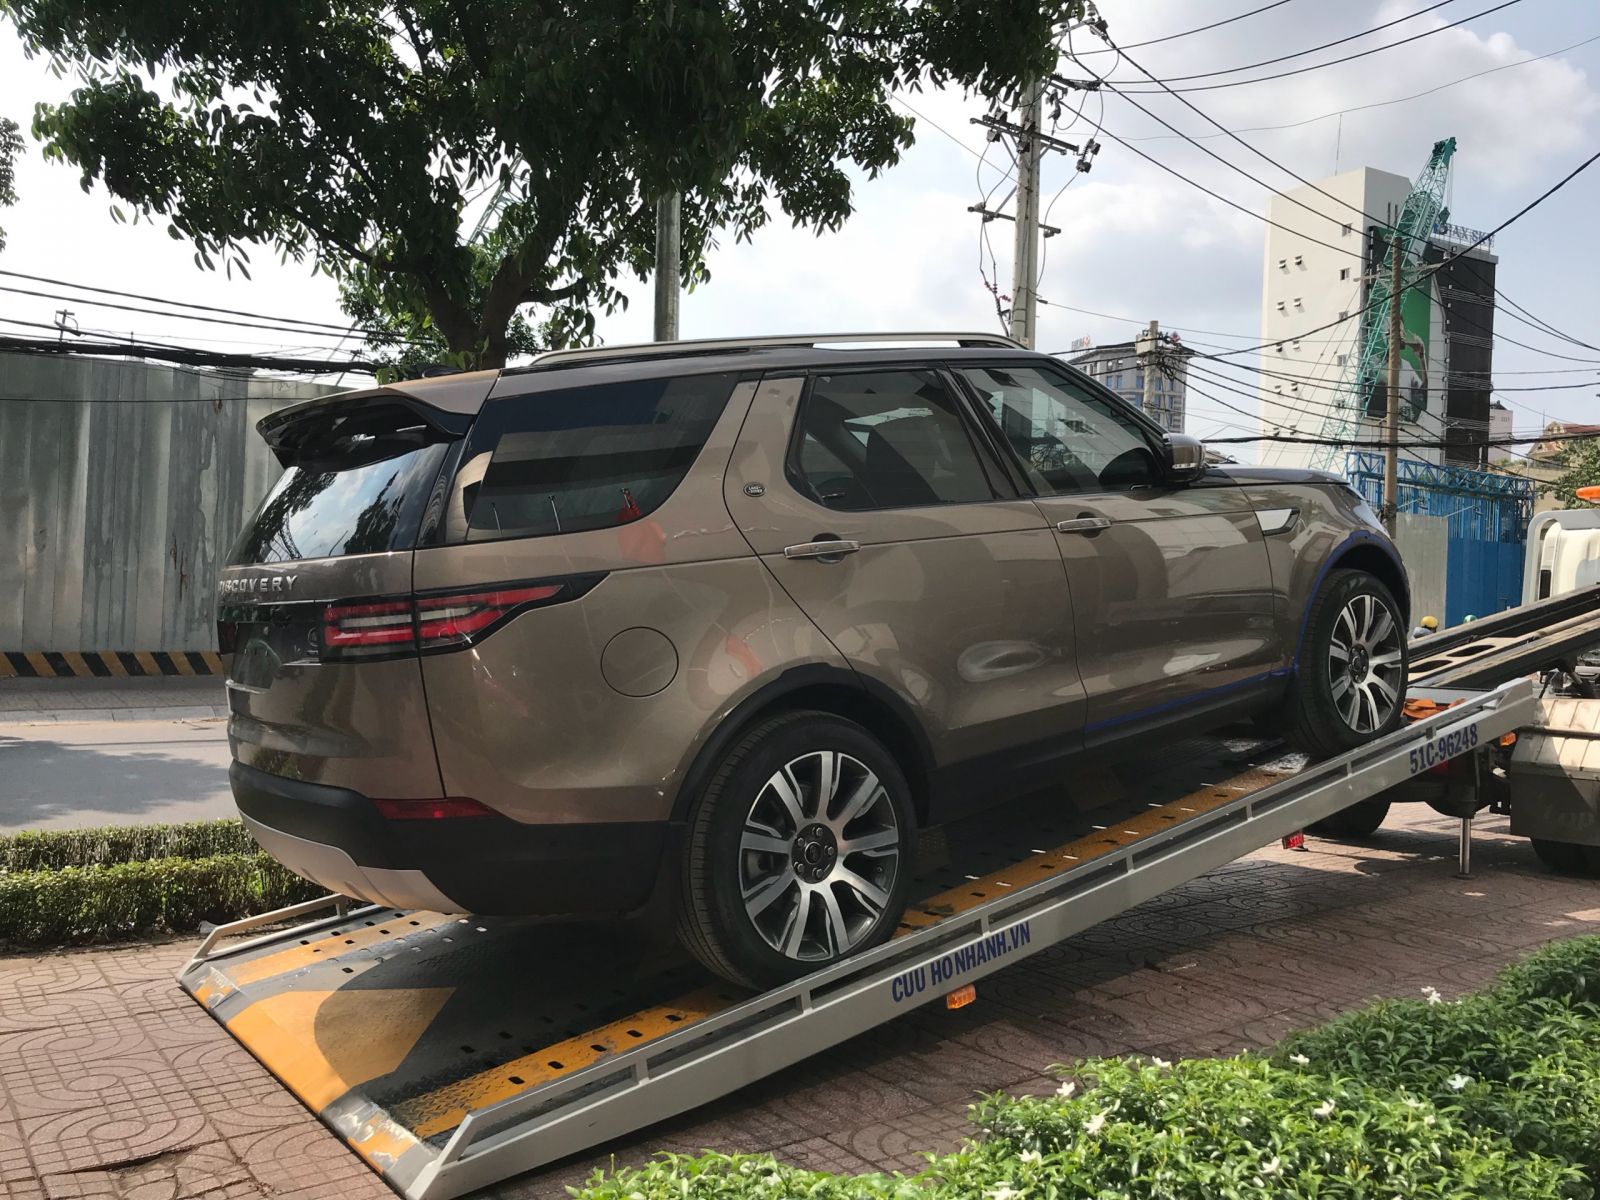 Giá Xe Range Rover 7 Chỗ Discovery Bản Cao Cấp HSE Luxury Màu Nâu 2018 - 2019 Bao nhiêu tiền bán tại Việt Nam, Xe Se, HSE, Xe Nhập, Xe Cũ ,Xe mới, Xe màu nào đẹp